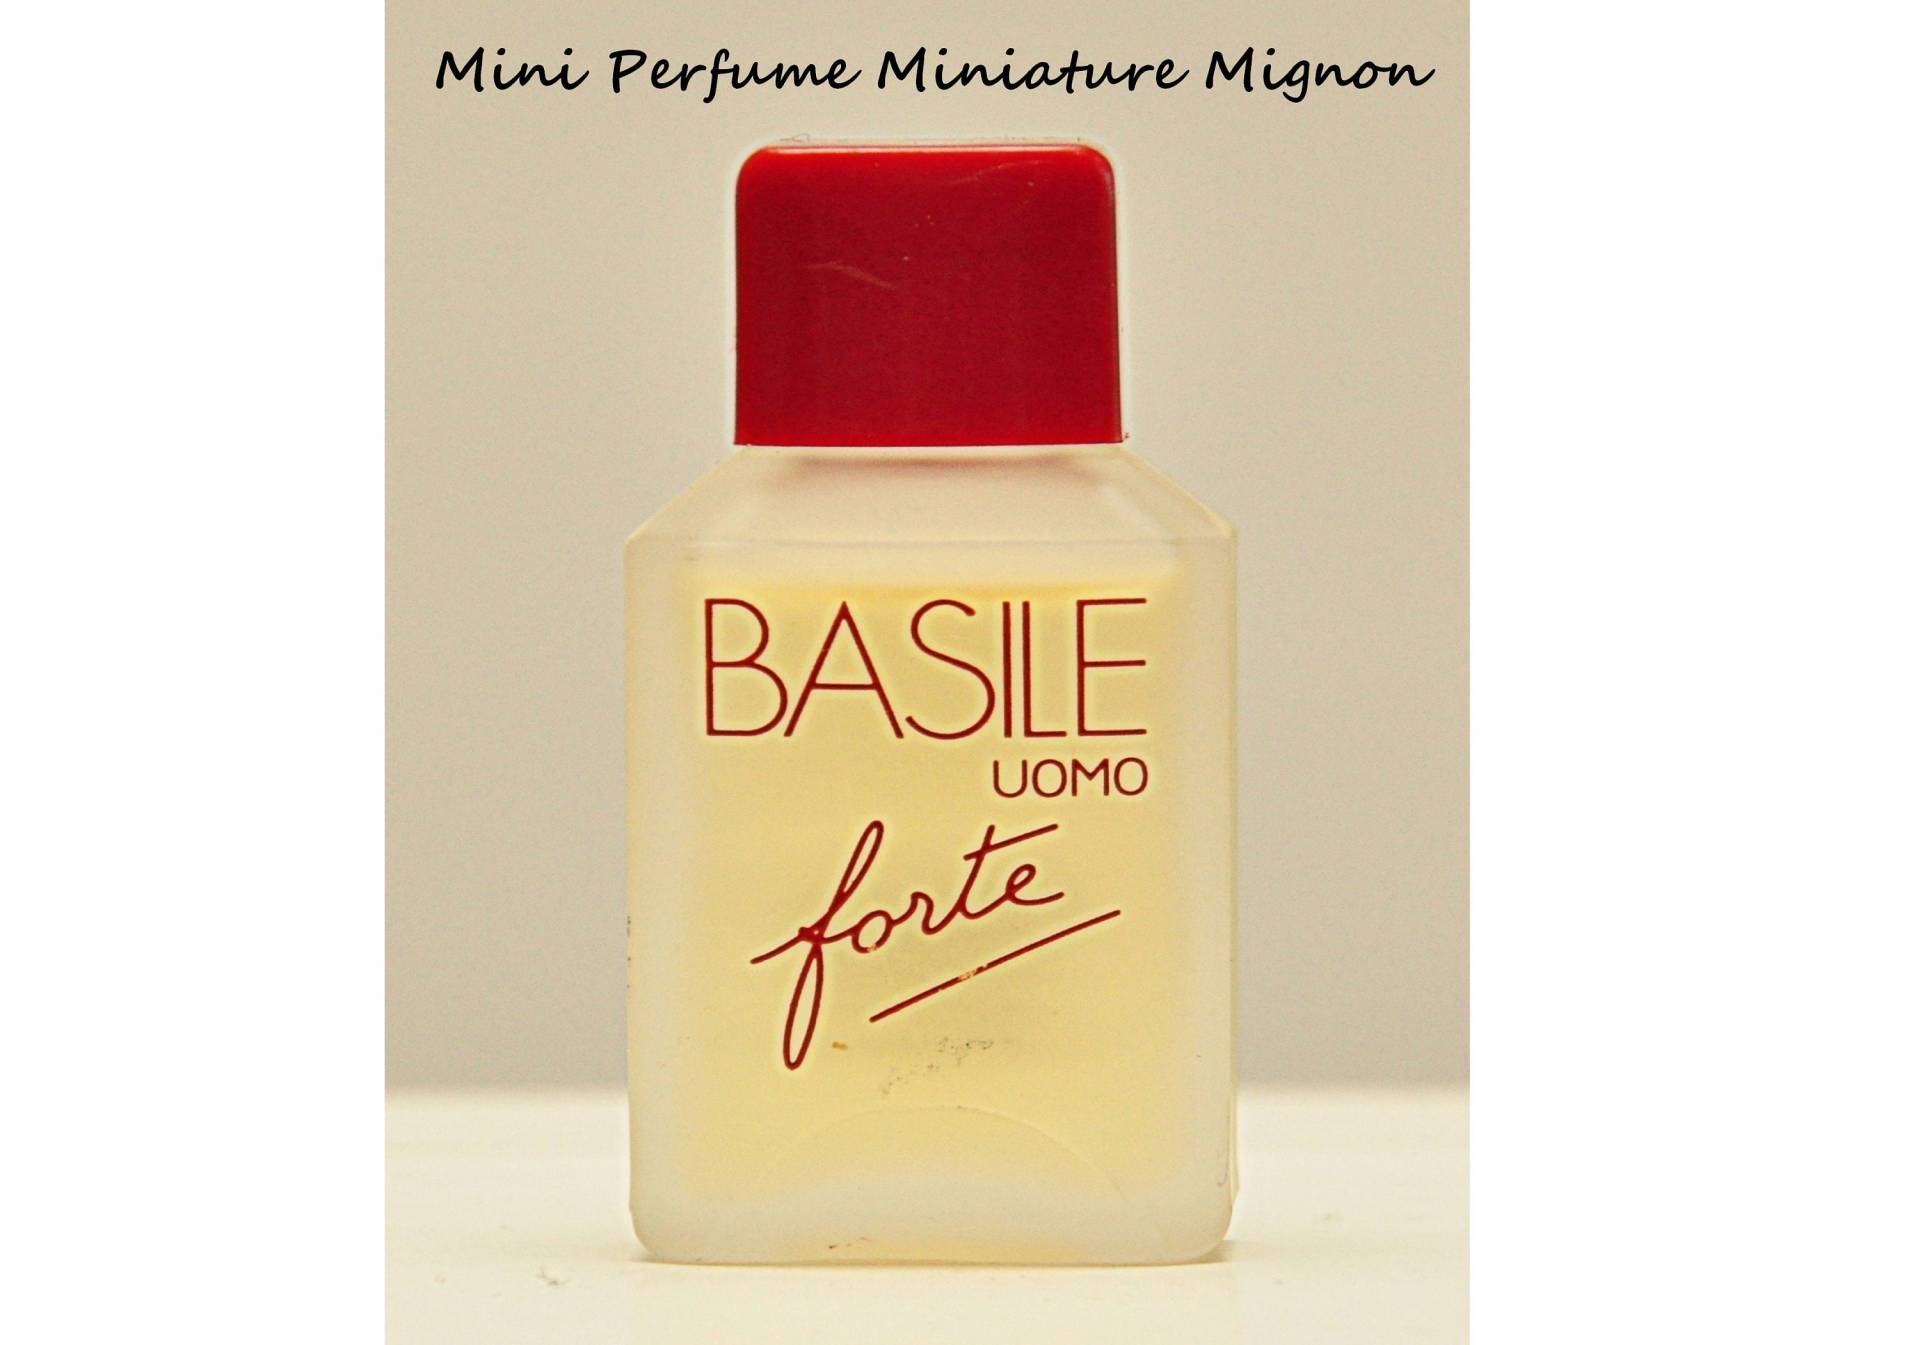 Basile Uomo Forte Von Eau De Toilette Edt 6 Ml Miniatur Splash Non Spray Herrenparfüm Seltener Jahrgang 1989 von Etsy - YourVintagePerfume